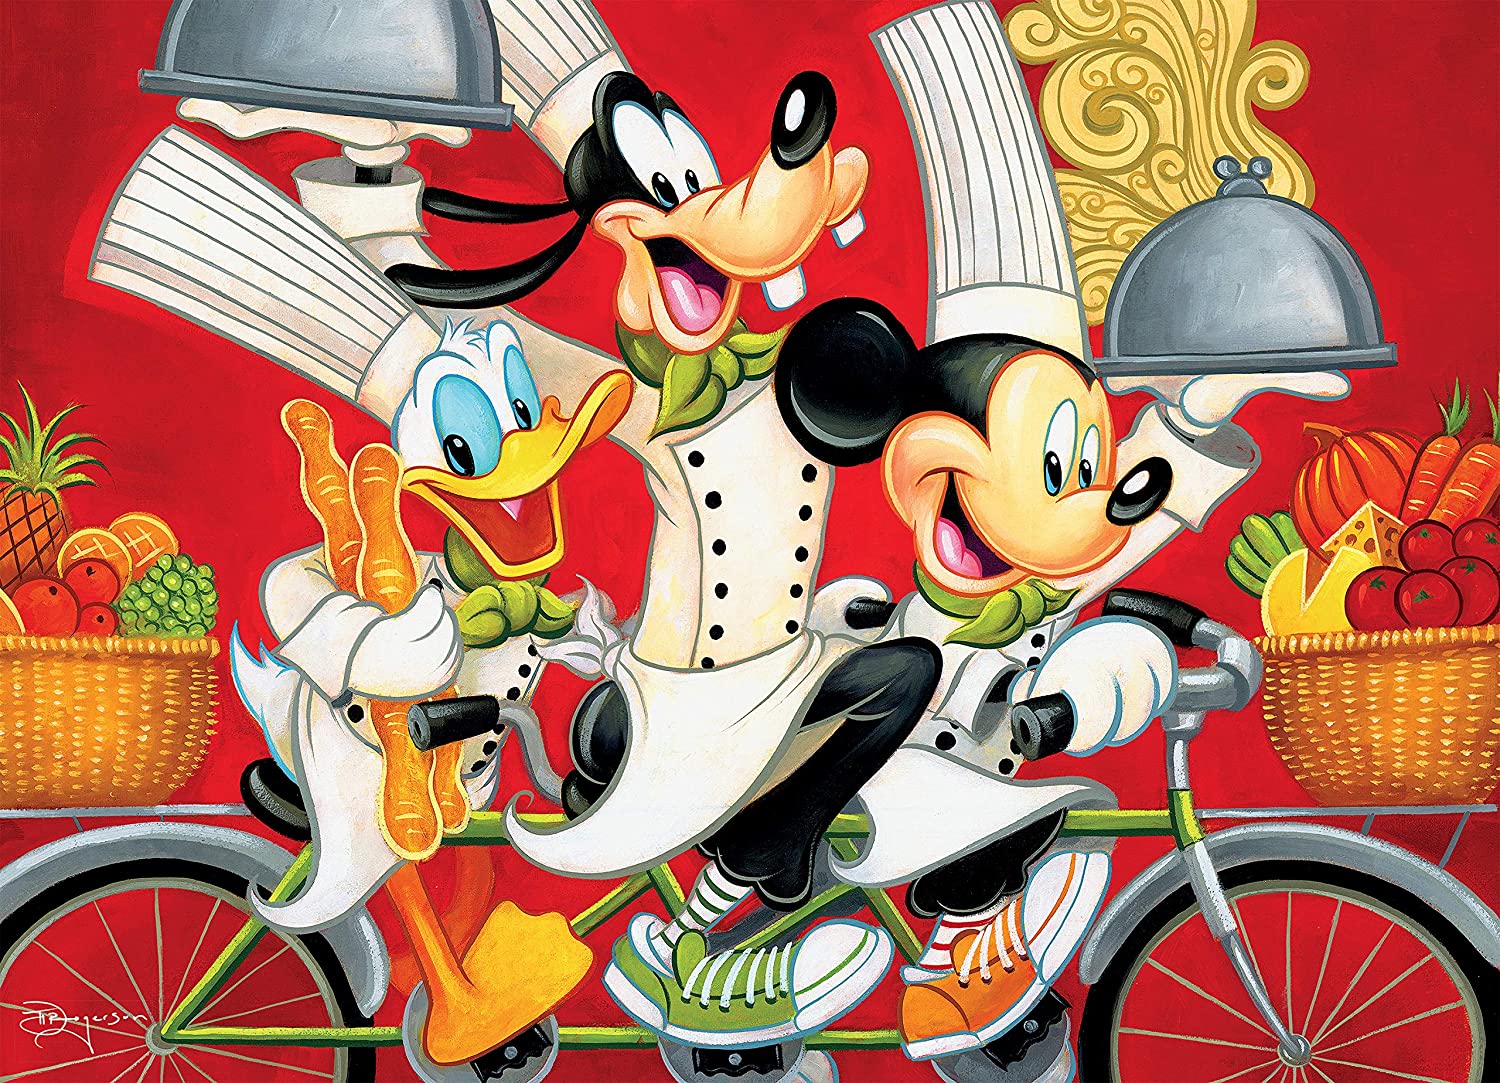 Puzzle 1000 Piezas | Disney Mickey, Goofy y Donald Chefs